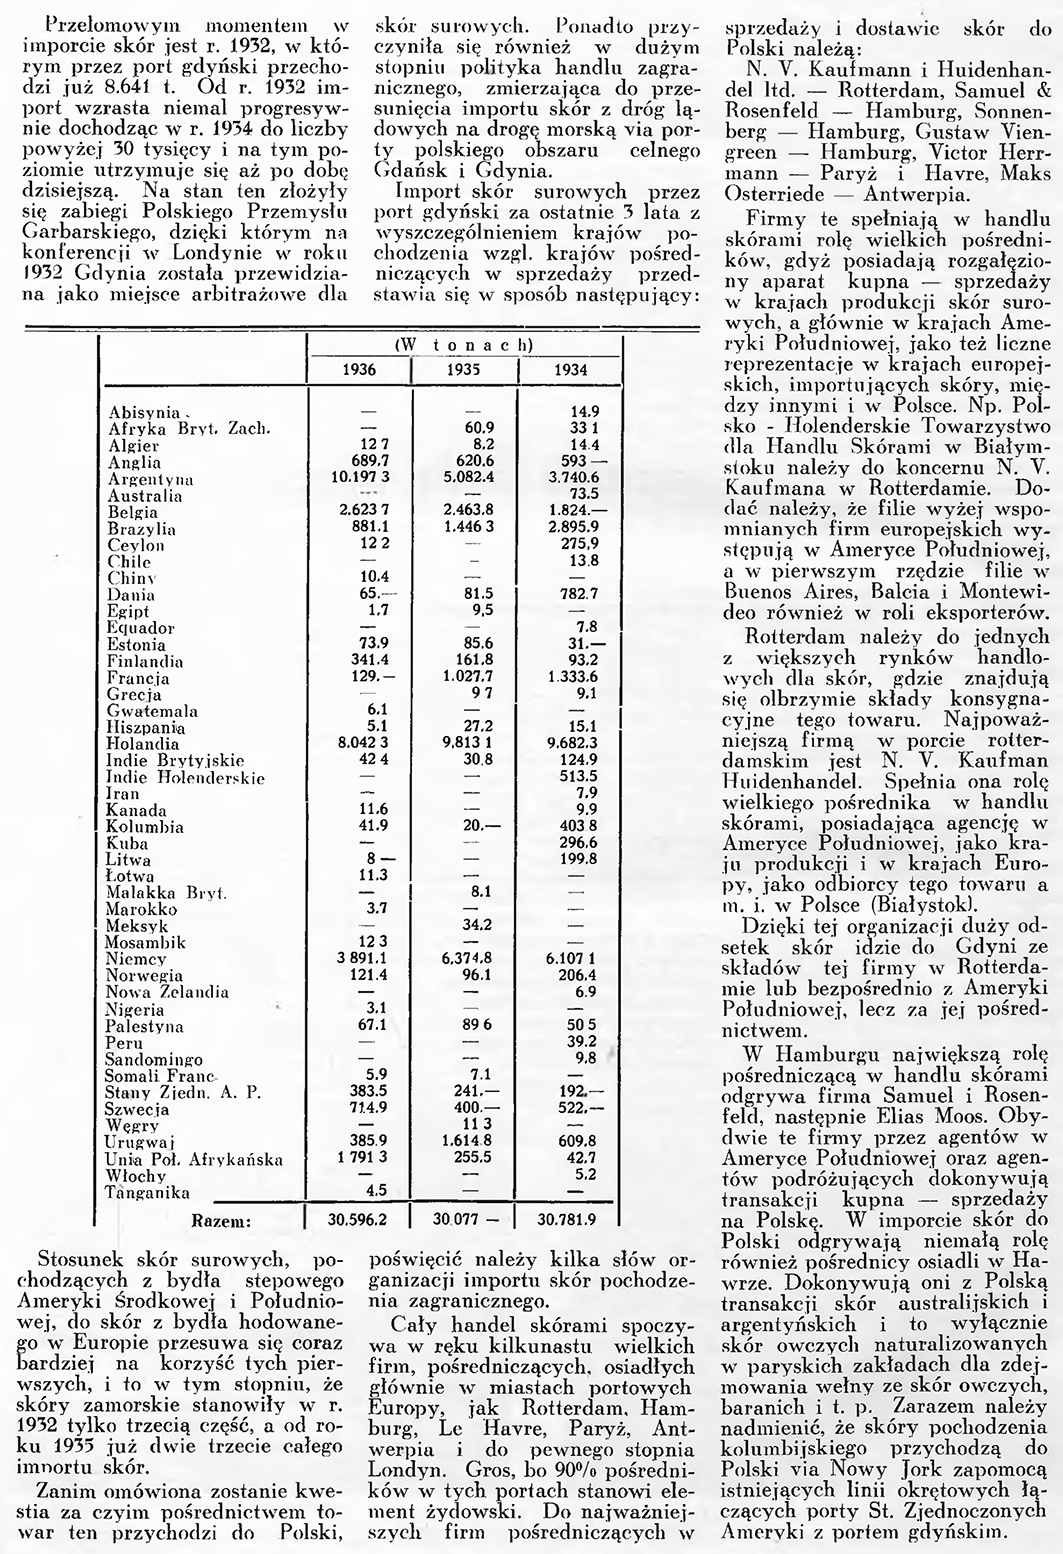 Zagadnienie importu skór droga morska / B. K. // Wiadomości Portu Gdyńskiego. - 1937, nr 12, s. 9-11. - Il.